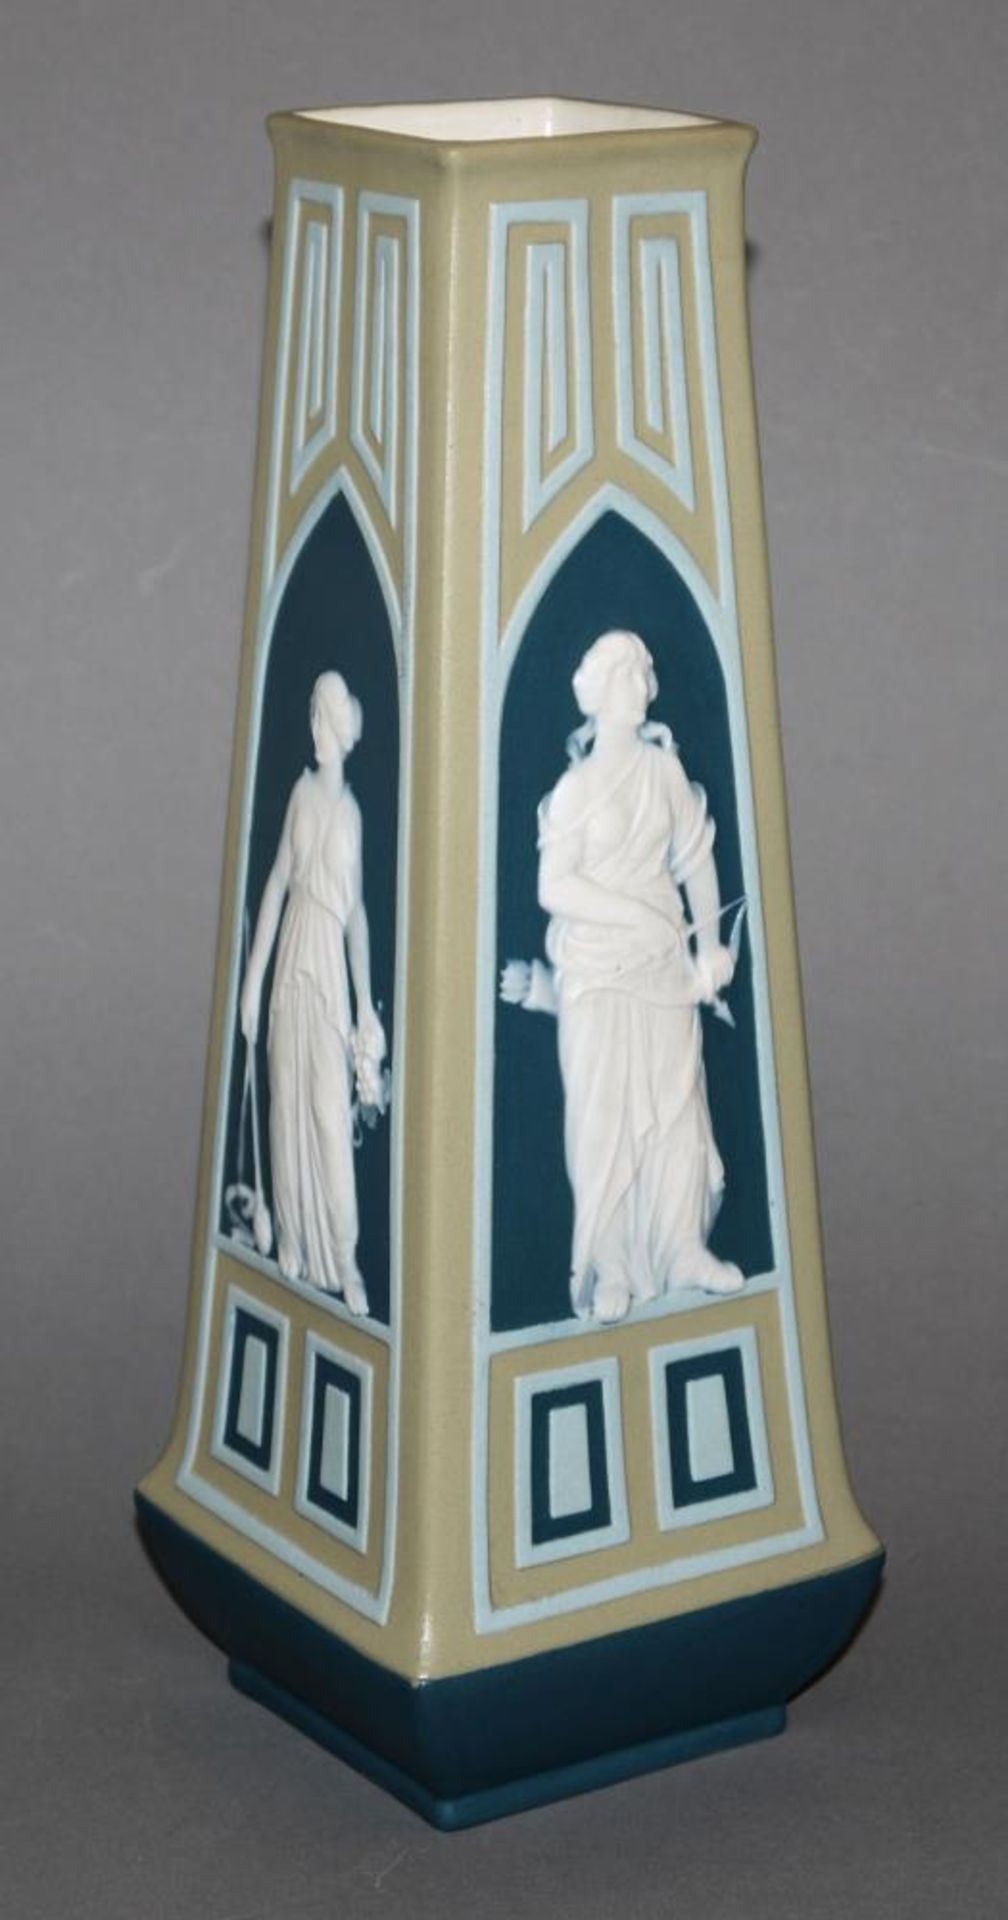 Jugendstil-Vase, Villeroy & Boch, Mettlach von 1908 Graues Steinzeug mit hellbauer und blauer